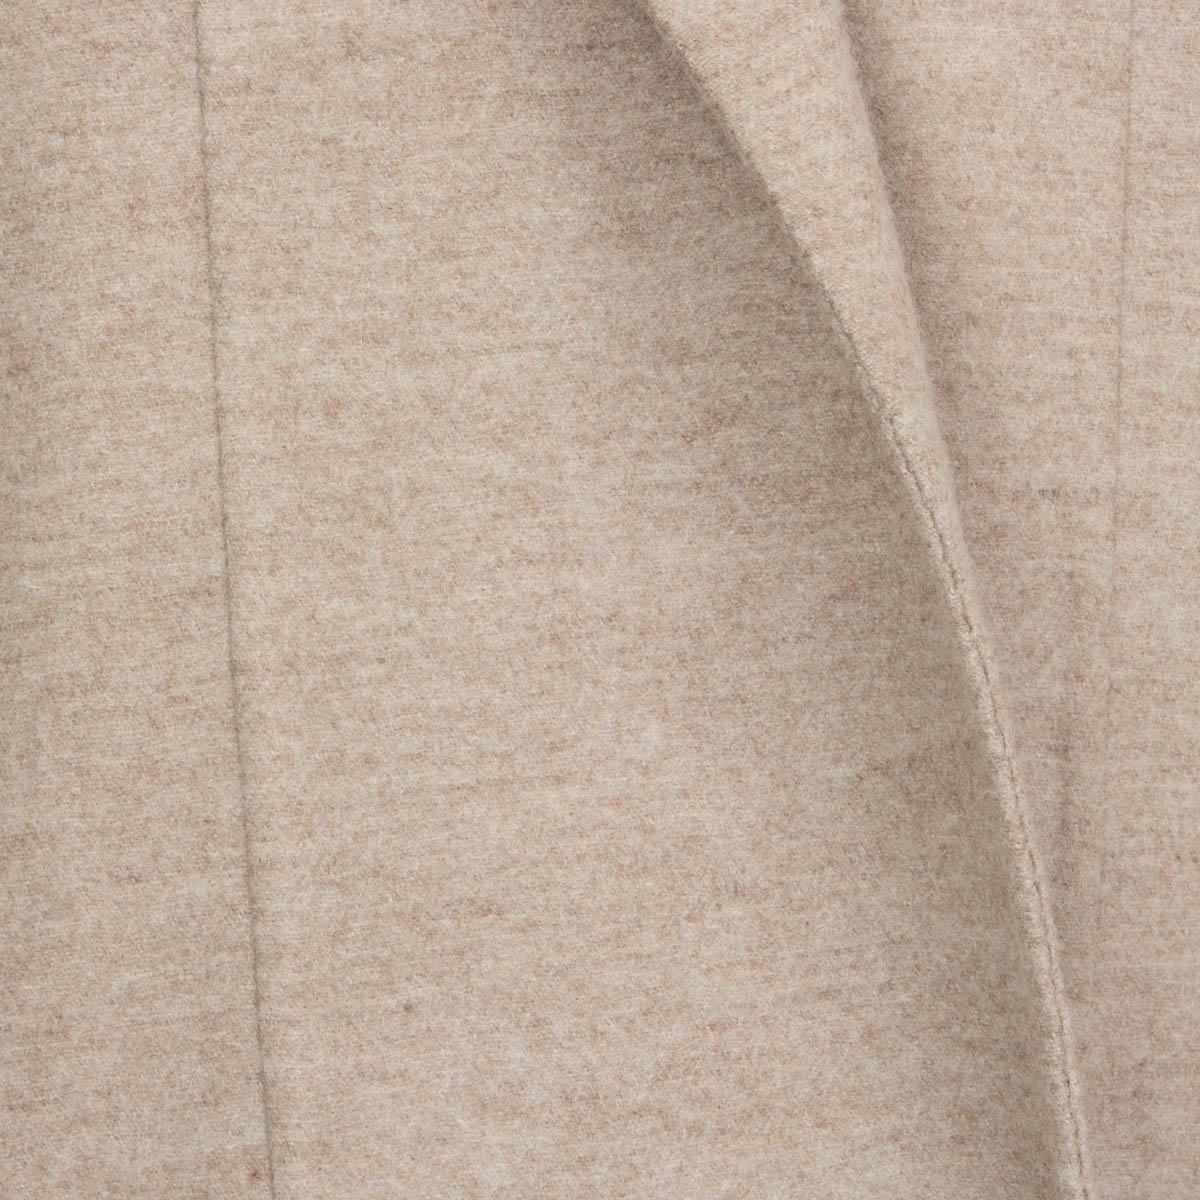 JIL SANDER beige wool & angora HOODED SINGLE BUTTON Coat Jacket 40 L 2